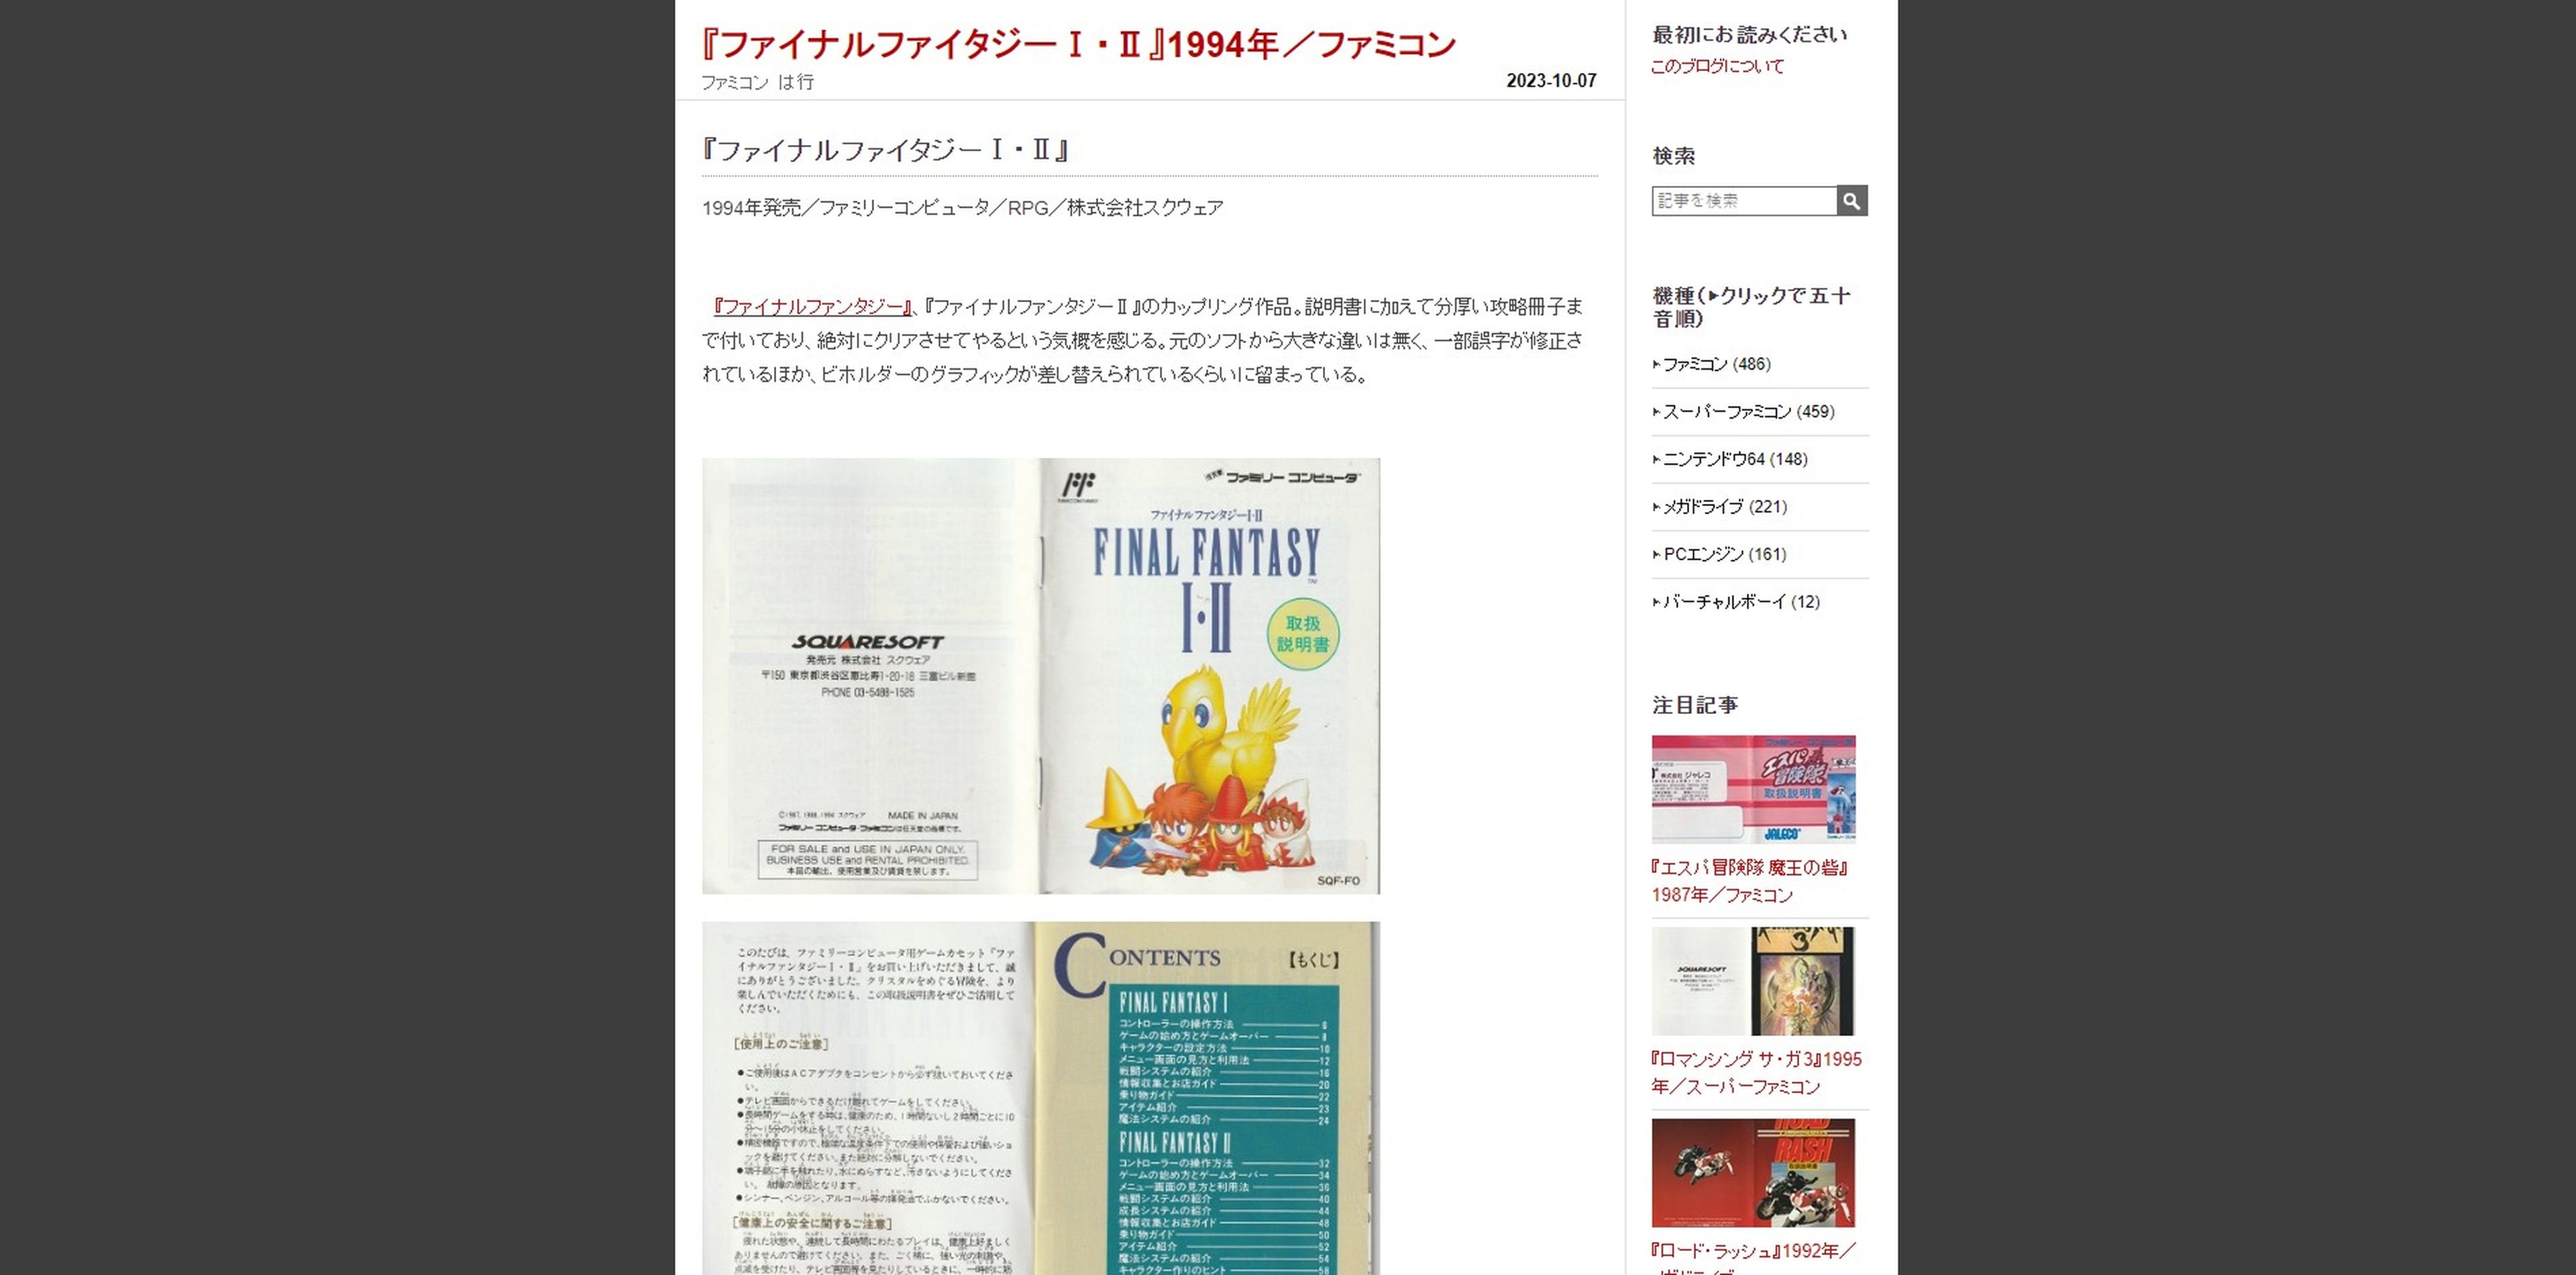 Manual de instrucciones de Final Fantasy I & II (1994)